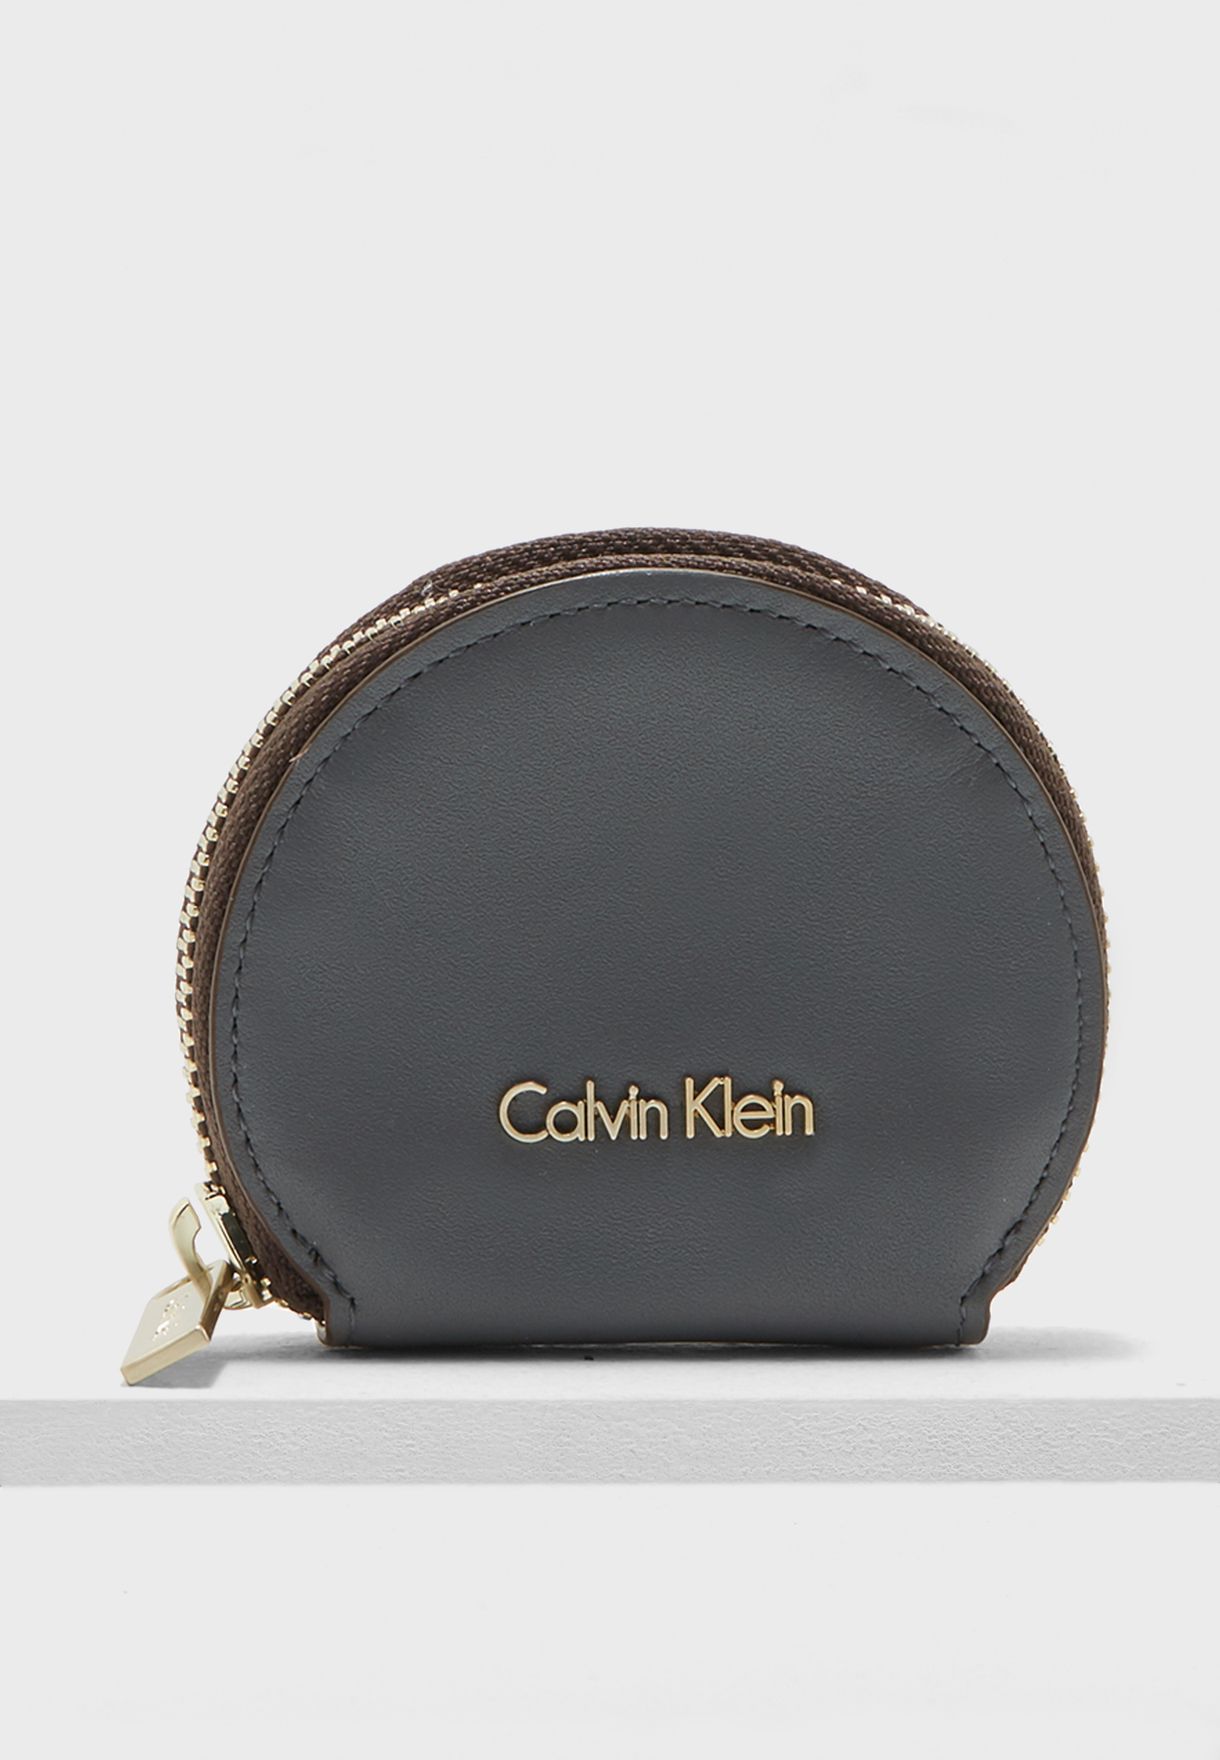 calvin klein coin purse